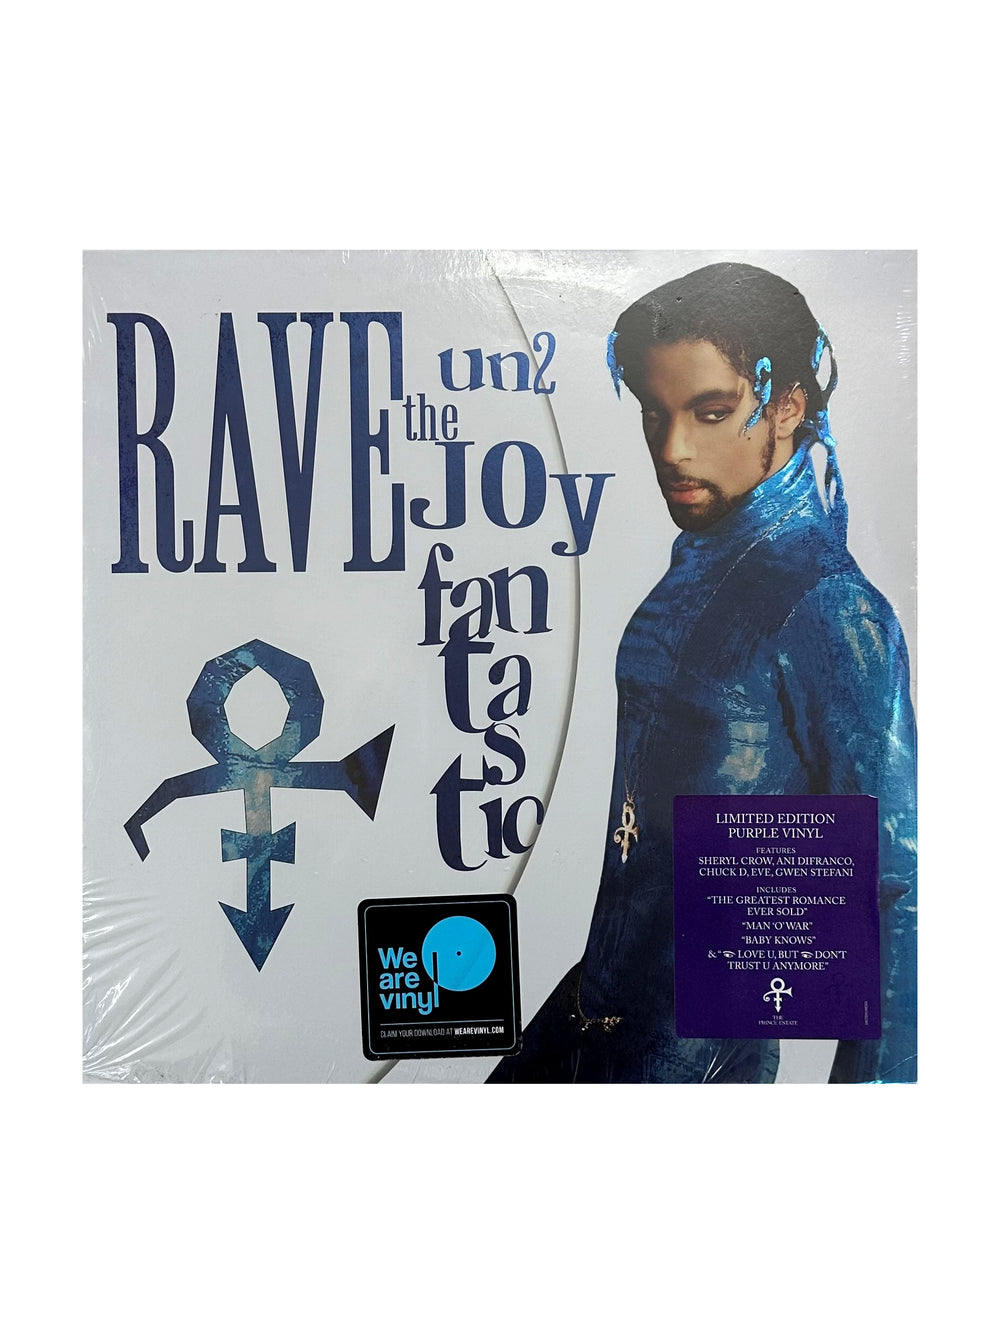 Prince – 0(+> Rave Un2 The Joy Fantastic 2 x LP Vinyl Reissue Purple Sony Legacy Release NEW 2019